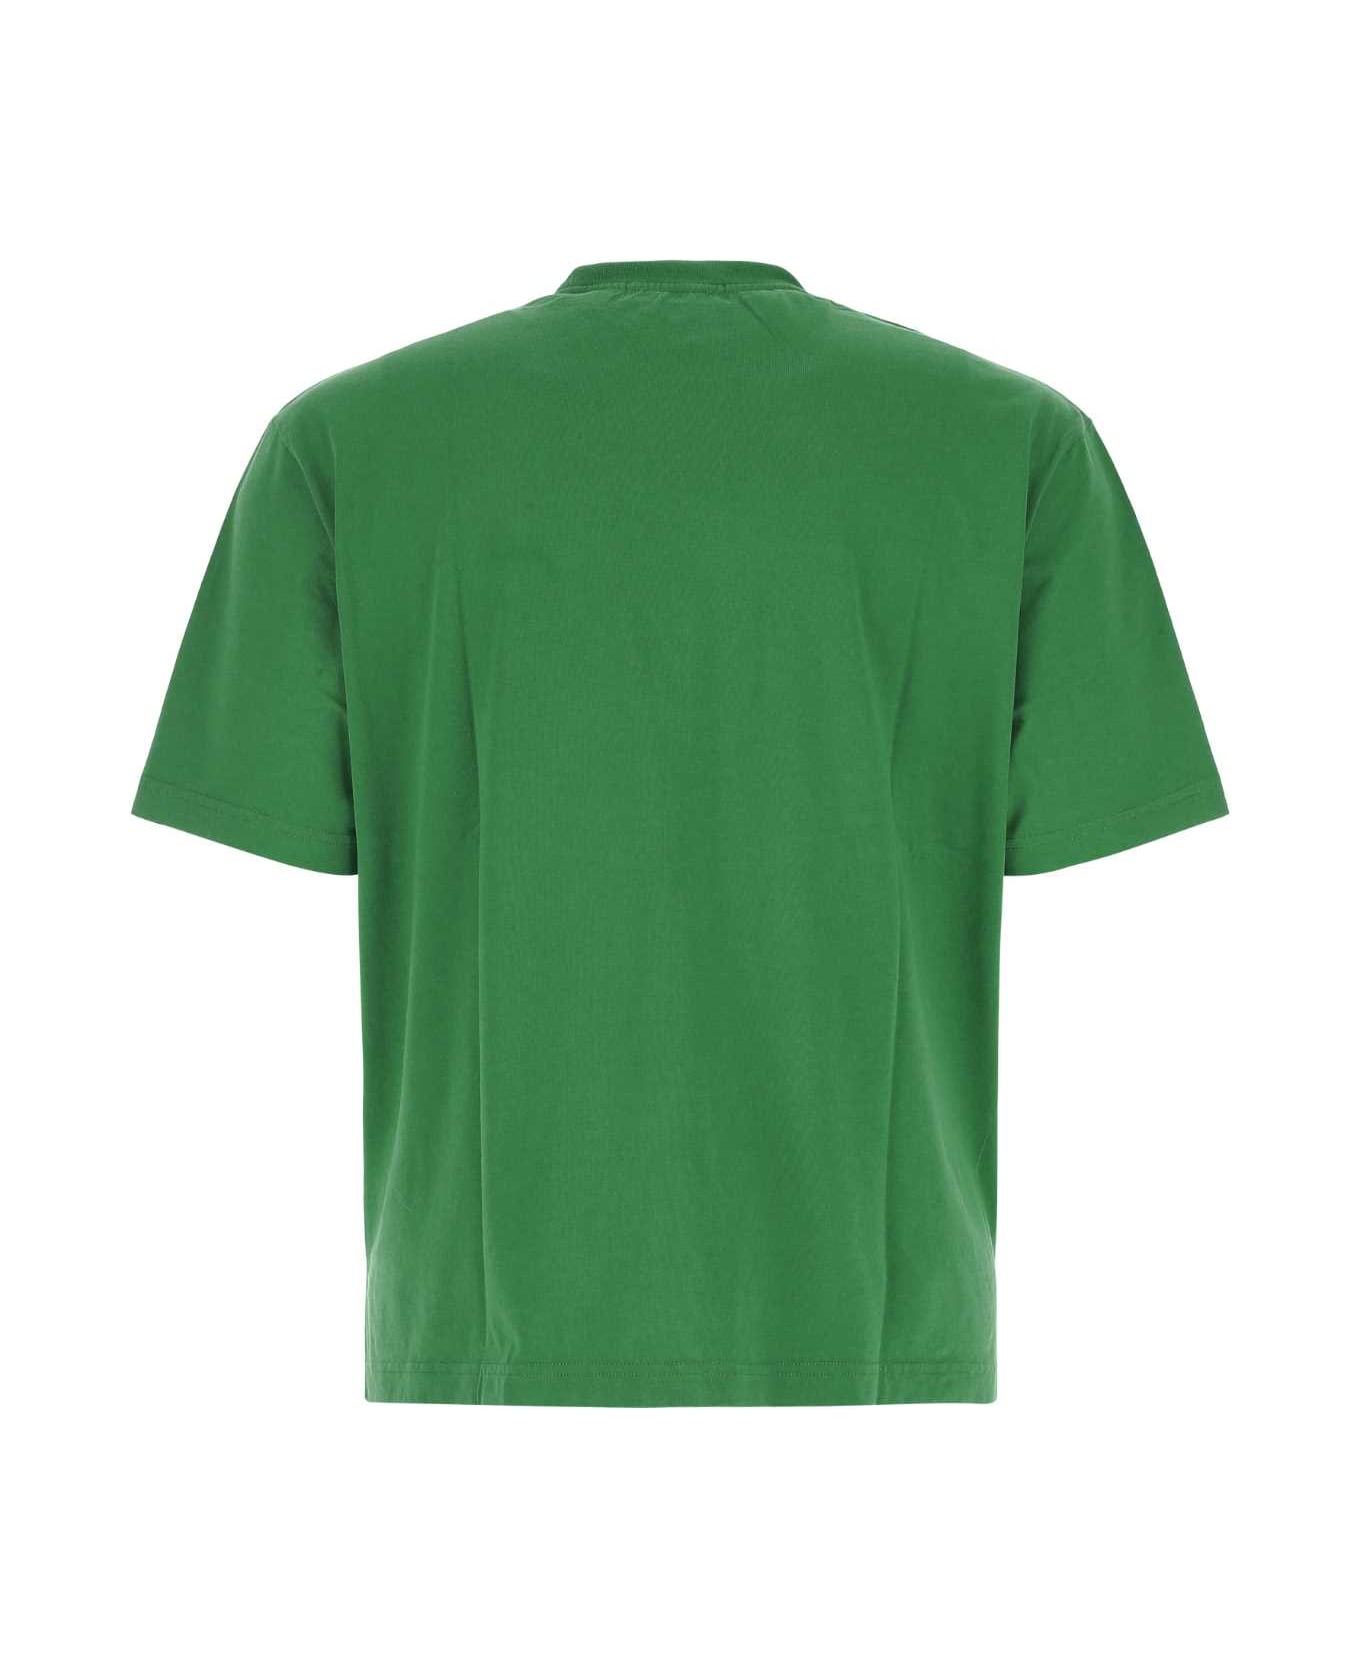 AMBUSH Grass Green Cotton T-shirt - 5510